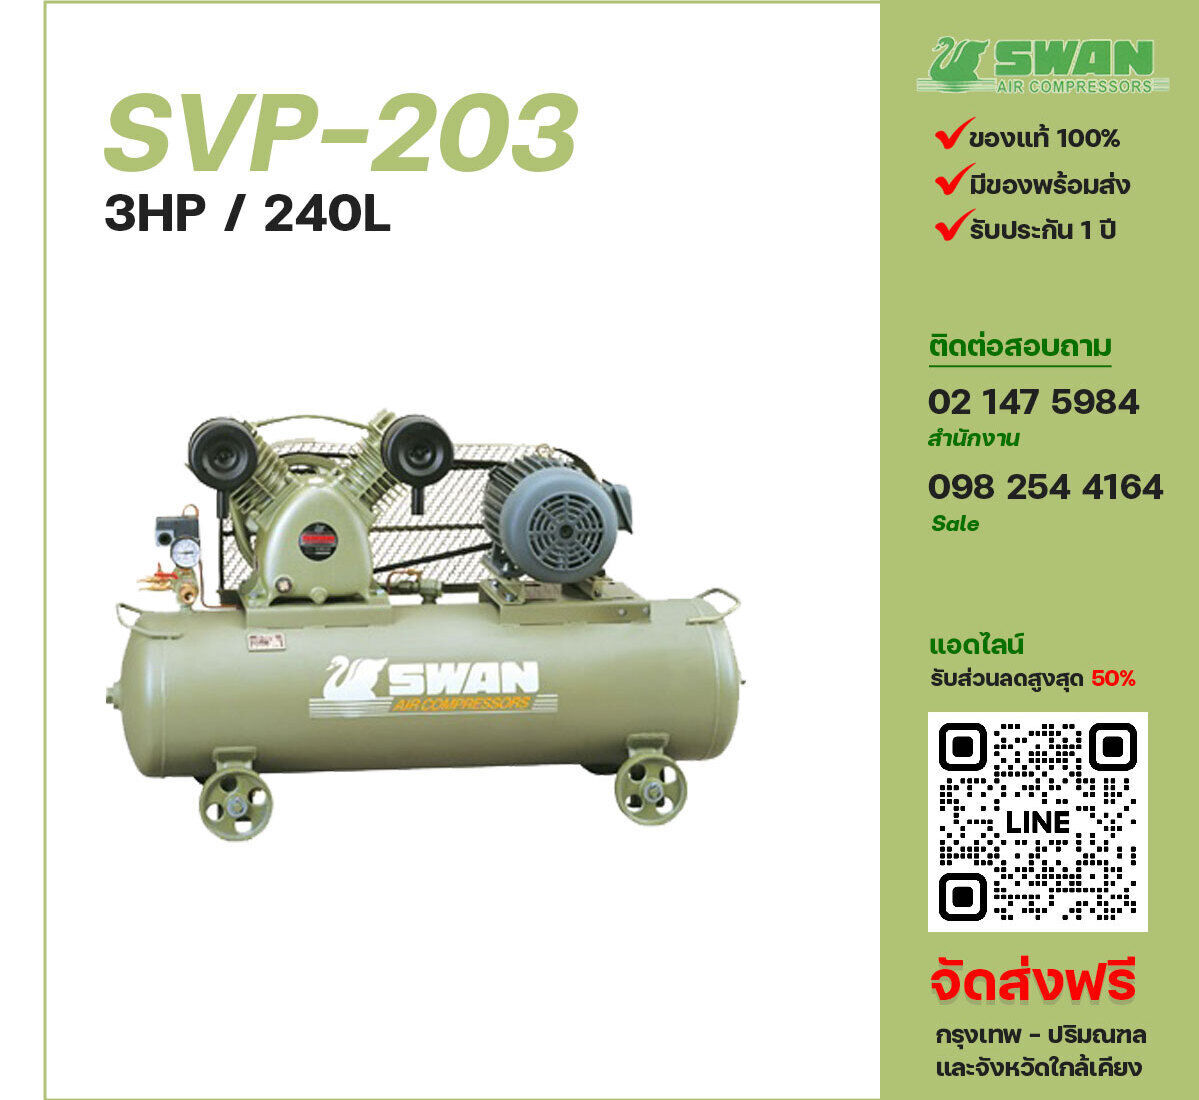 ปั๊มลมสวอน SWAN SVP-203 220V/380V ปั๊มลมลูกสูบ ขนาด 2 สูบ 3 แรงม้า 240 ลิตร SWAN พร้อมมอเตอร์ ไฟ 220V/380V ส่งฟรี กรุงเทพฯ-ปริมณฑล รับประกัน 1 ปี